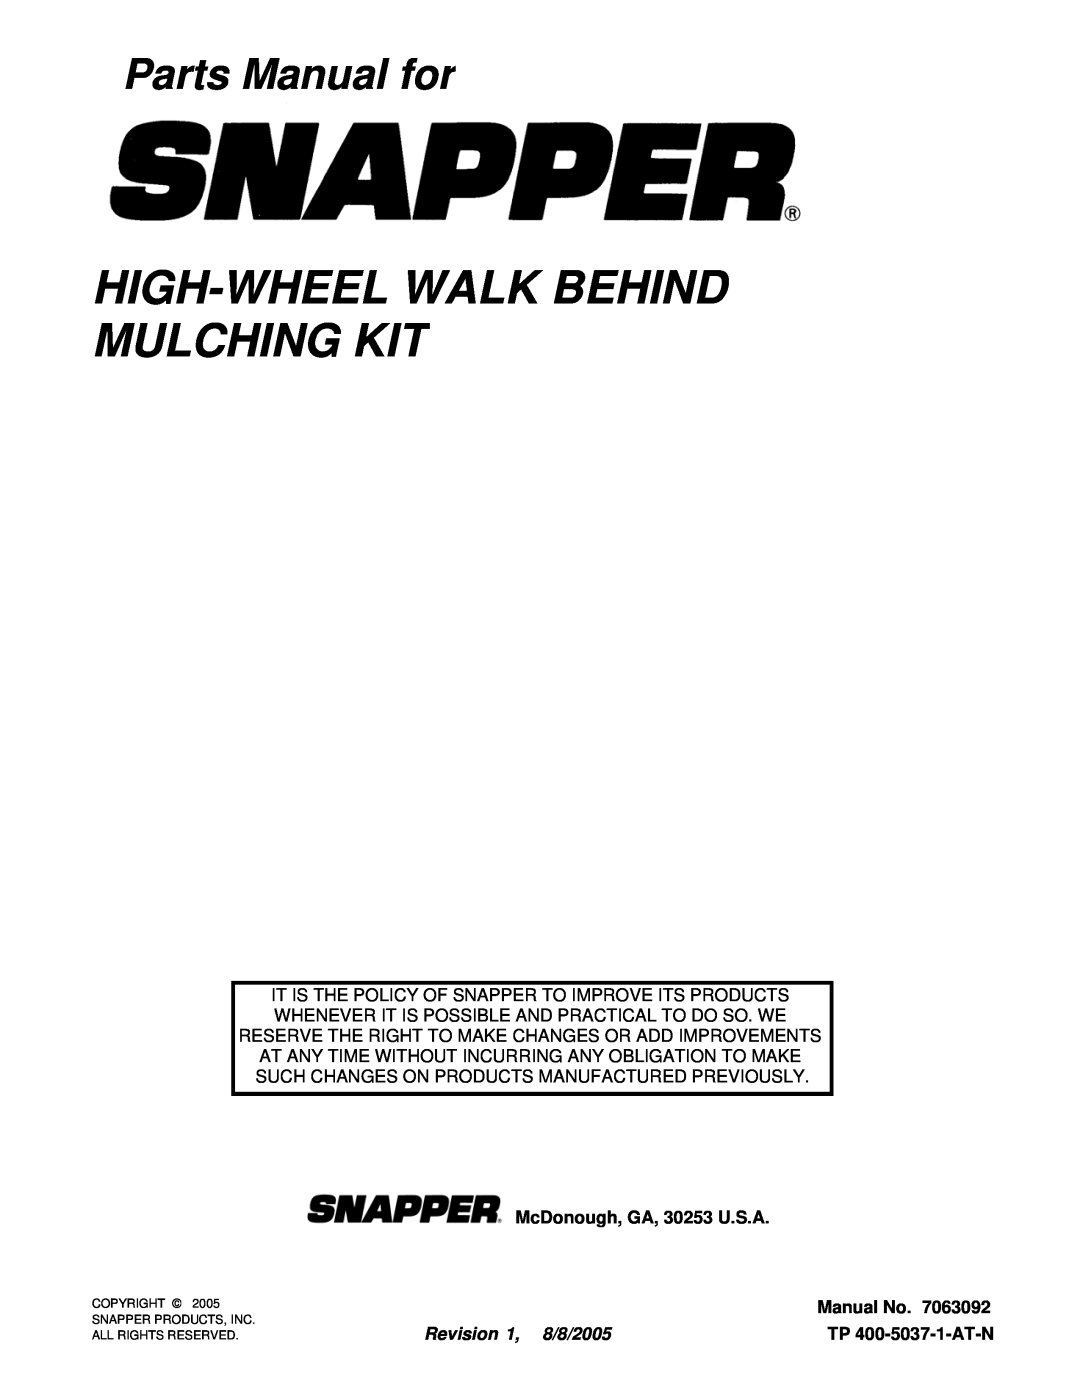 Snapper 7063092 manual High-Wheelwalk Behind Mulching Kit, Parts Manual for, McDonough, GA, 30253 U.S.A, Manual No 